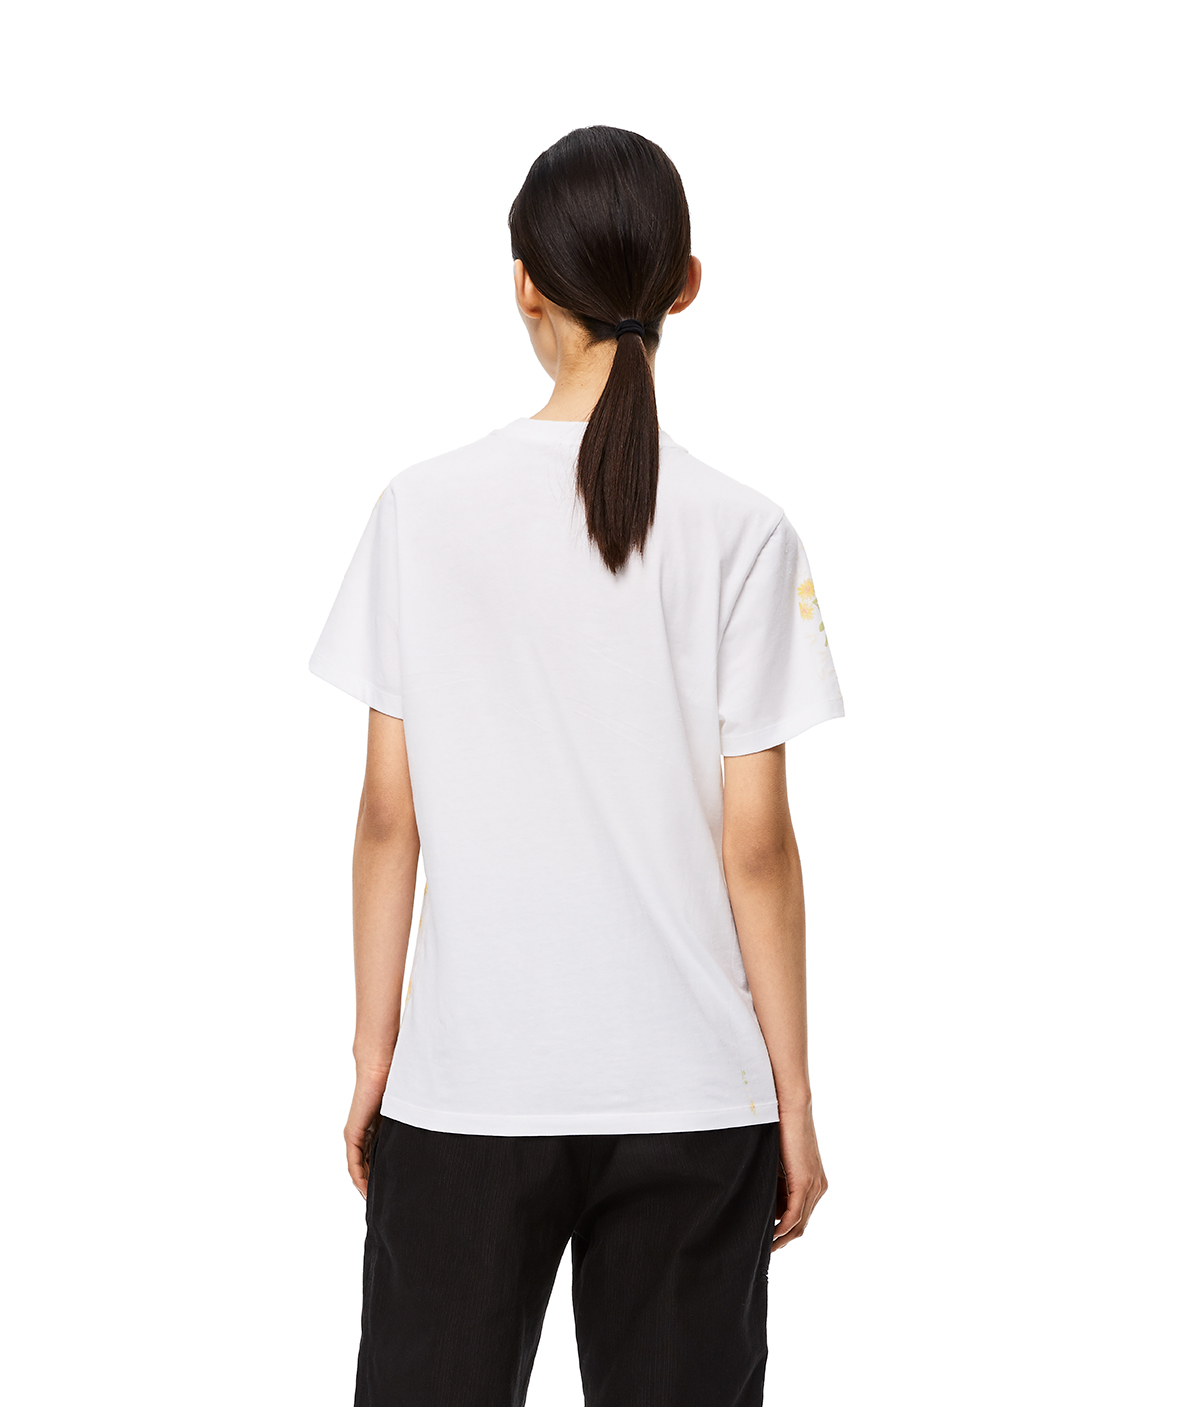 Flower Print Loewe T-Shirt White/Yellow - LOEWE